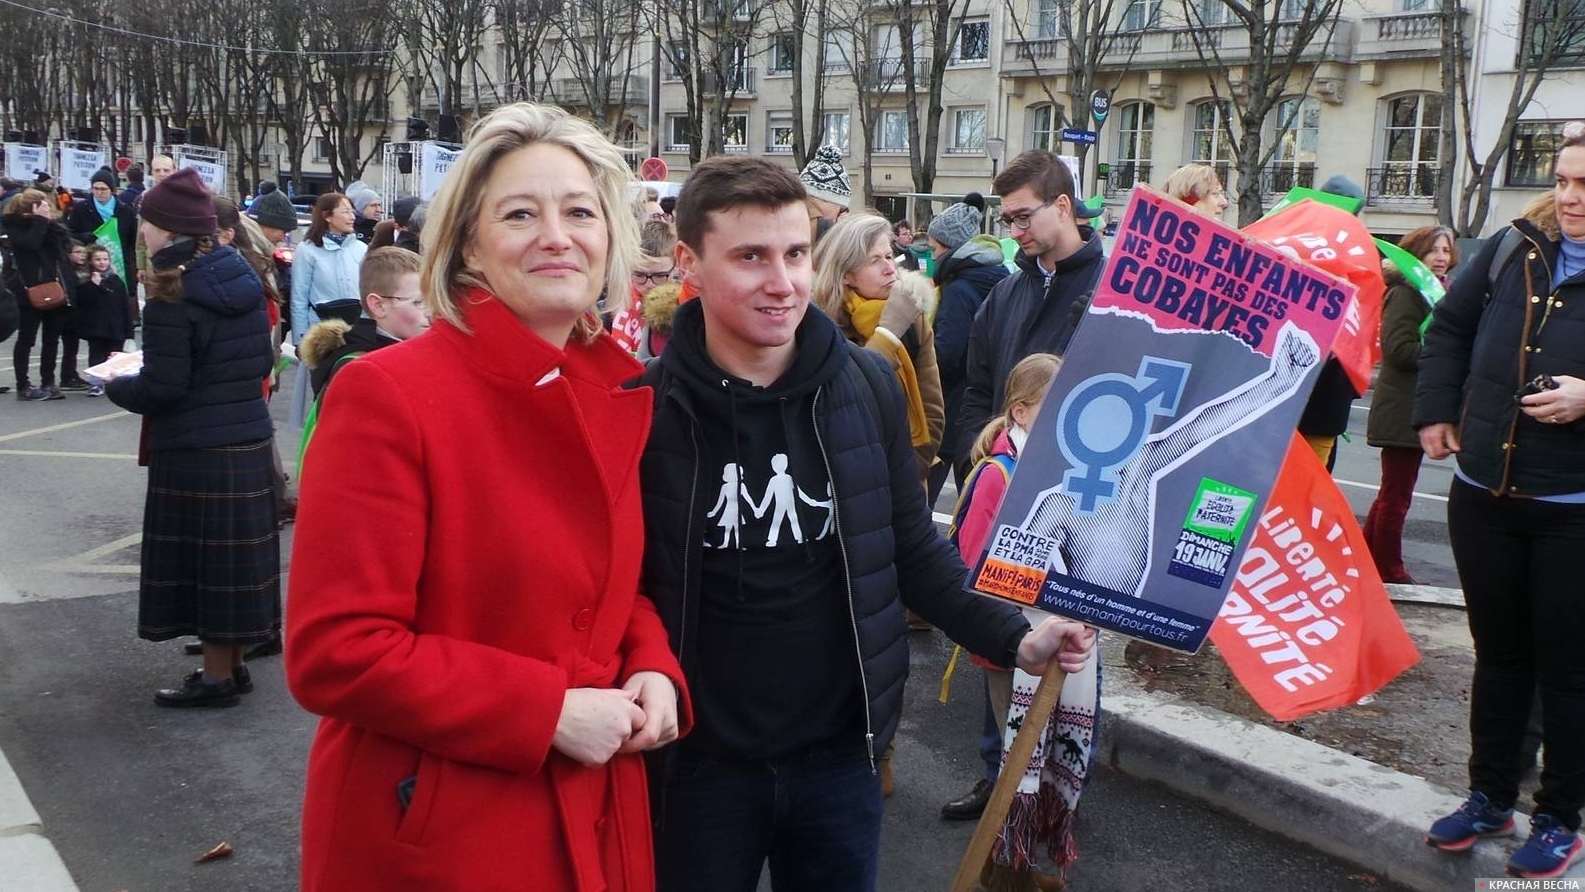 Глава движения La Manif Pour Tous («Манифестация для всех») Людовин де Ла Рошер на манифестации в Париже против законопроекта по биоэтике. 19 января 2020.